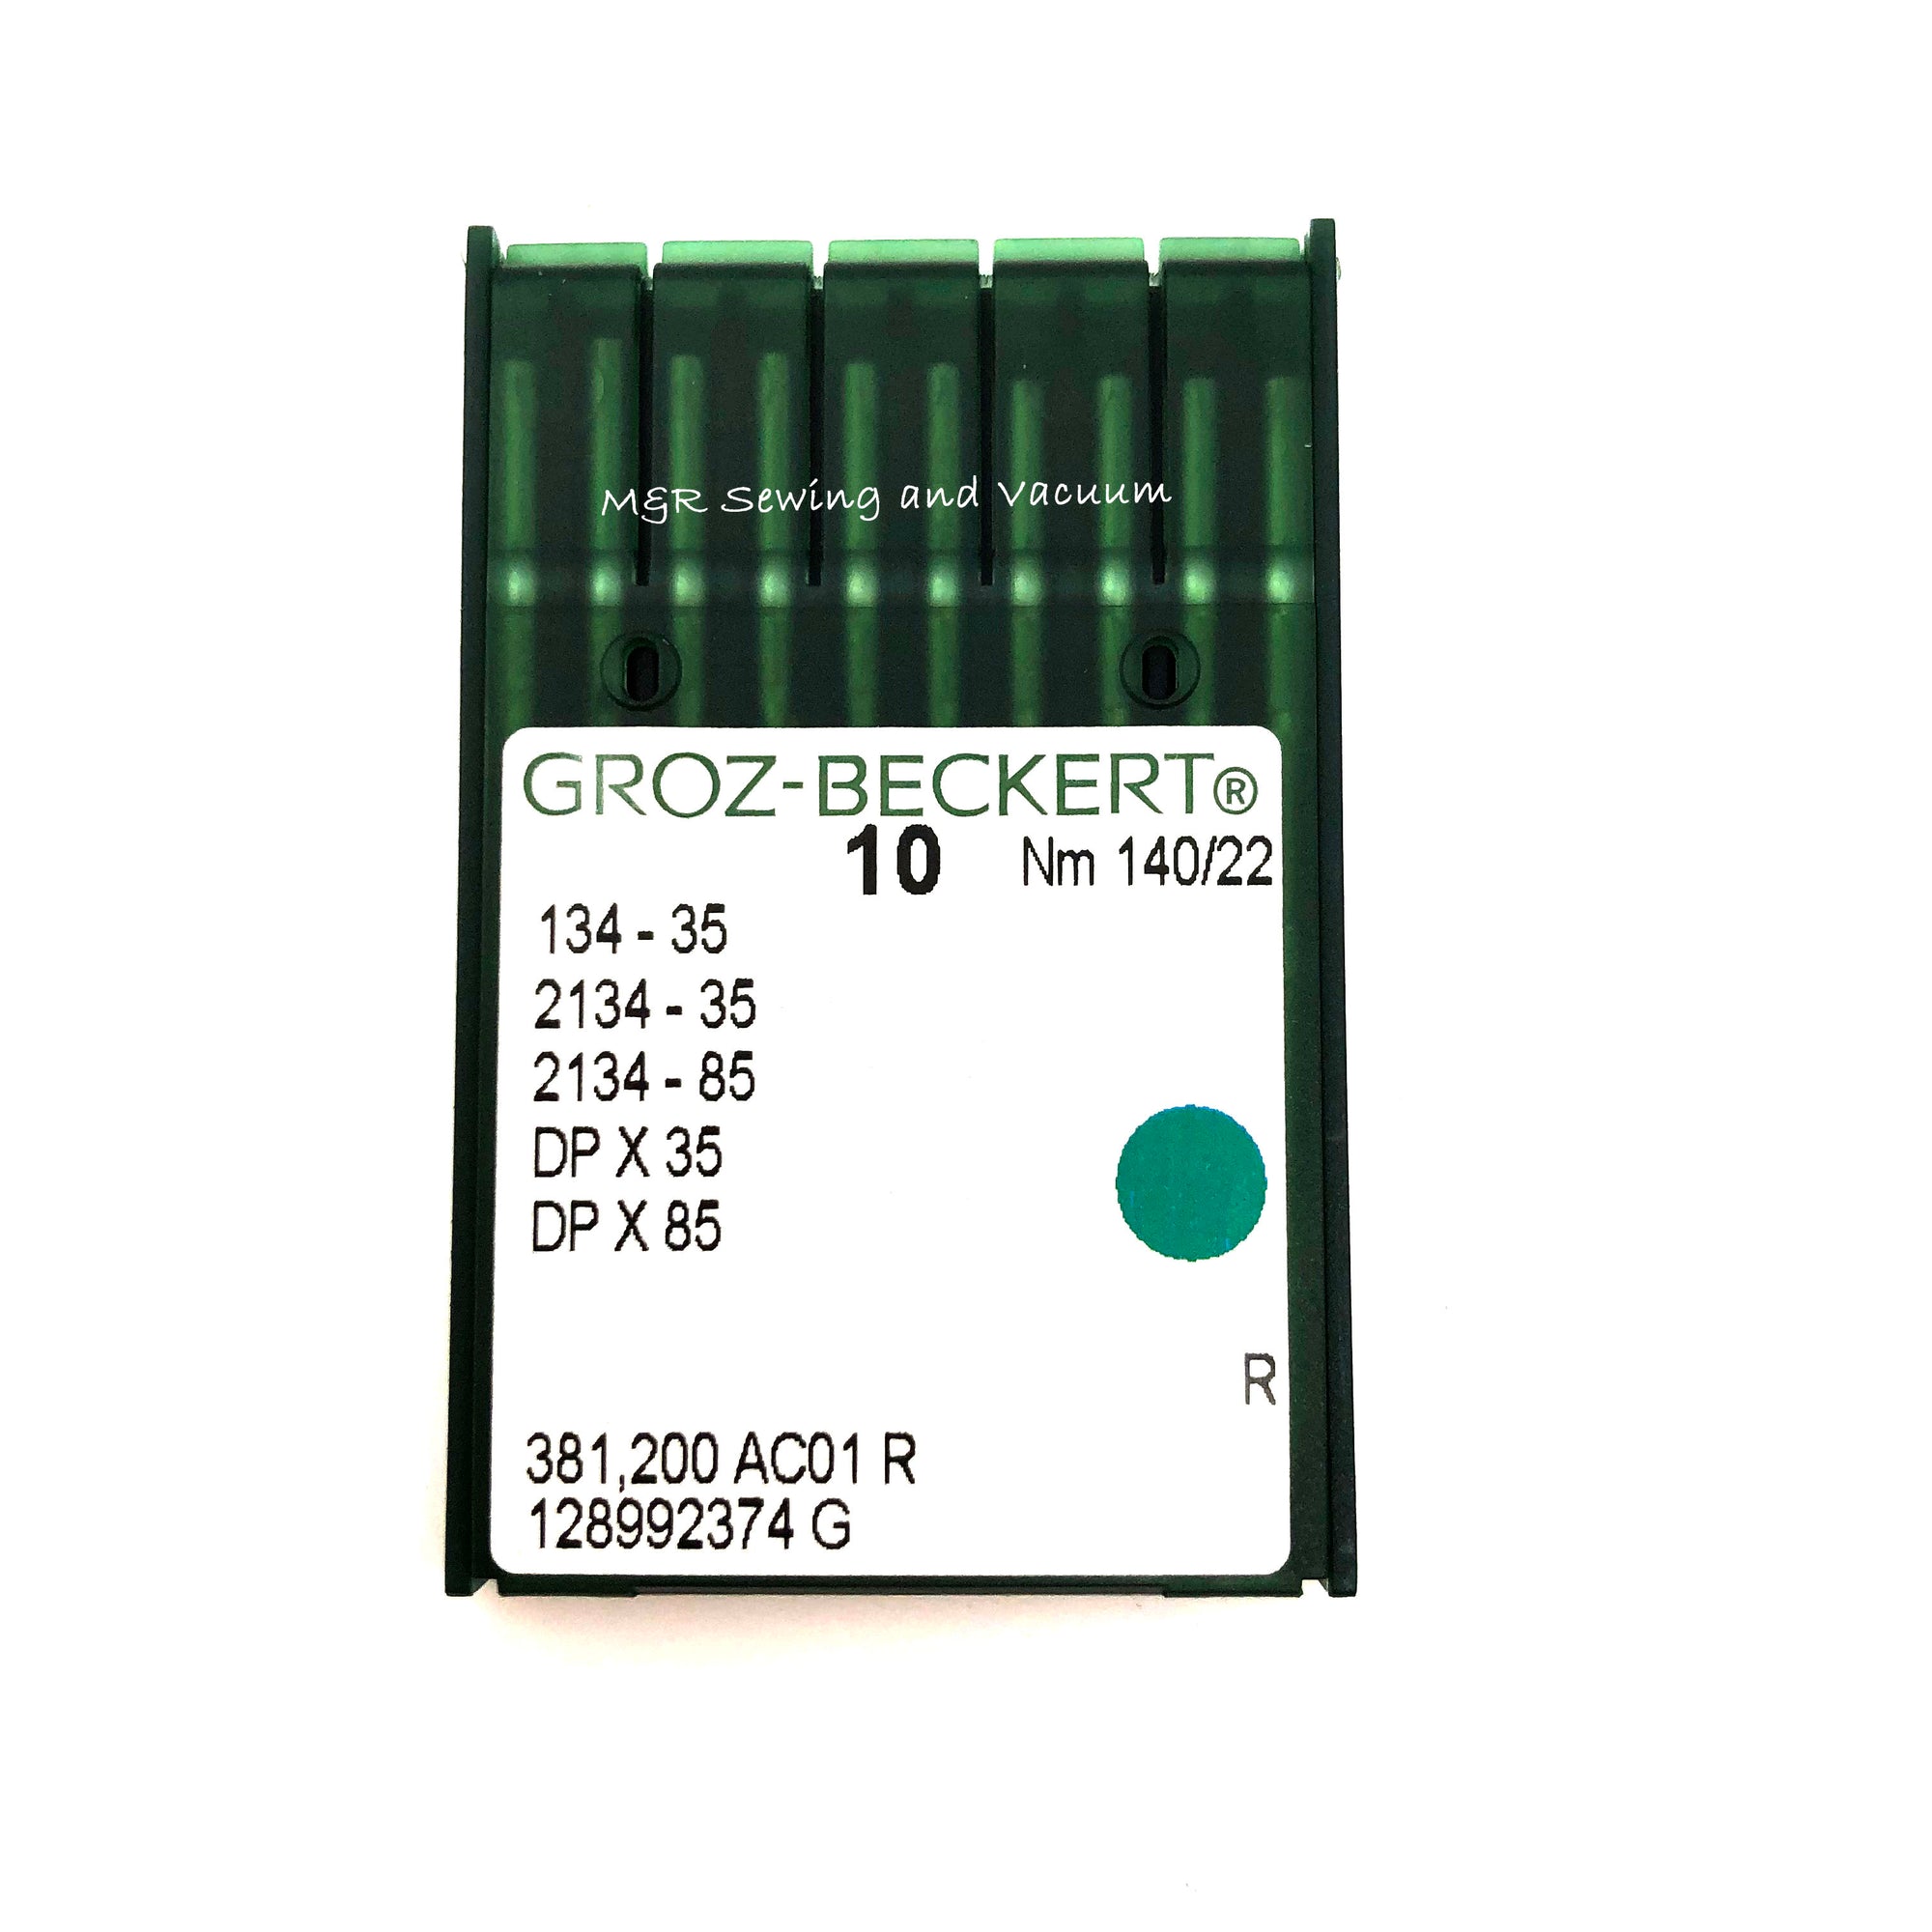 Groz-Beckert 134-35 (DPx35) Industrial Needles - 140/22